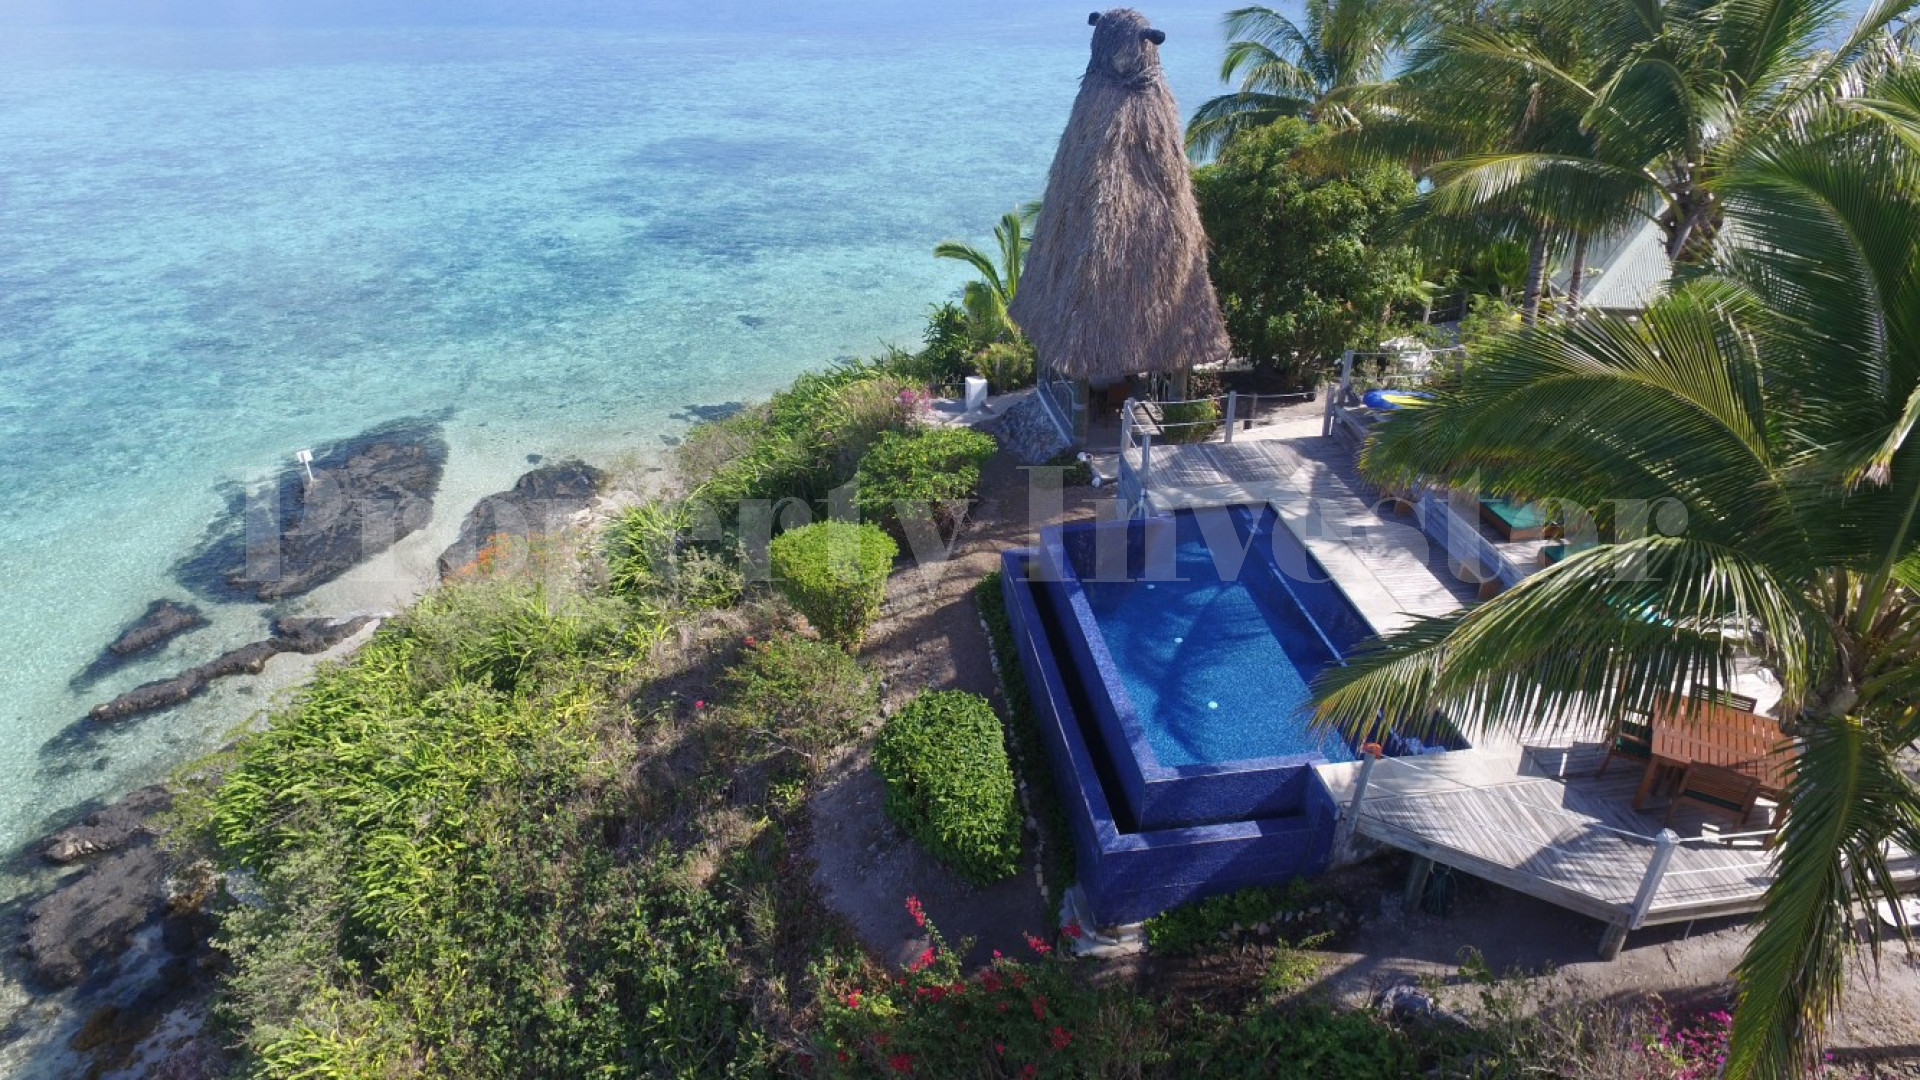 Популярный роскошный 5 звездочный бутик-отель на острове с невероятными панорамными видами на Маманука островах, Фиджи